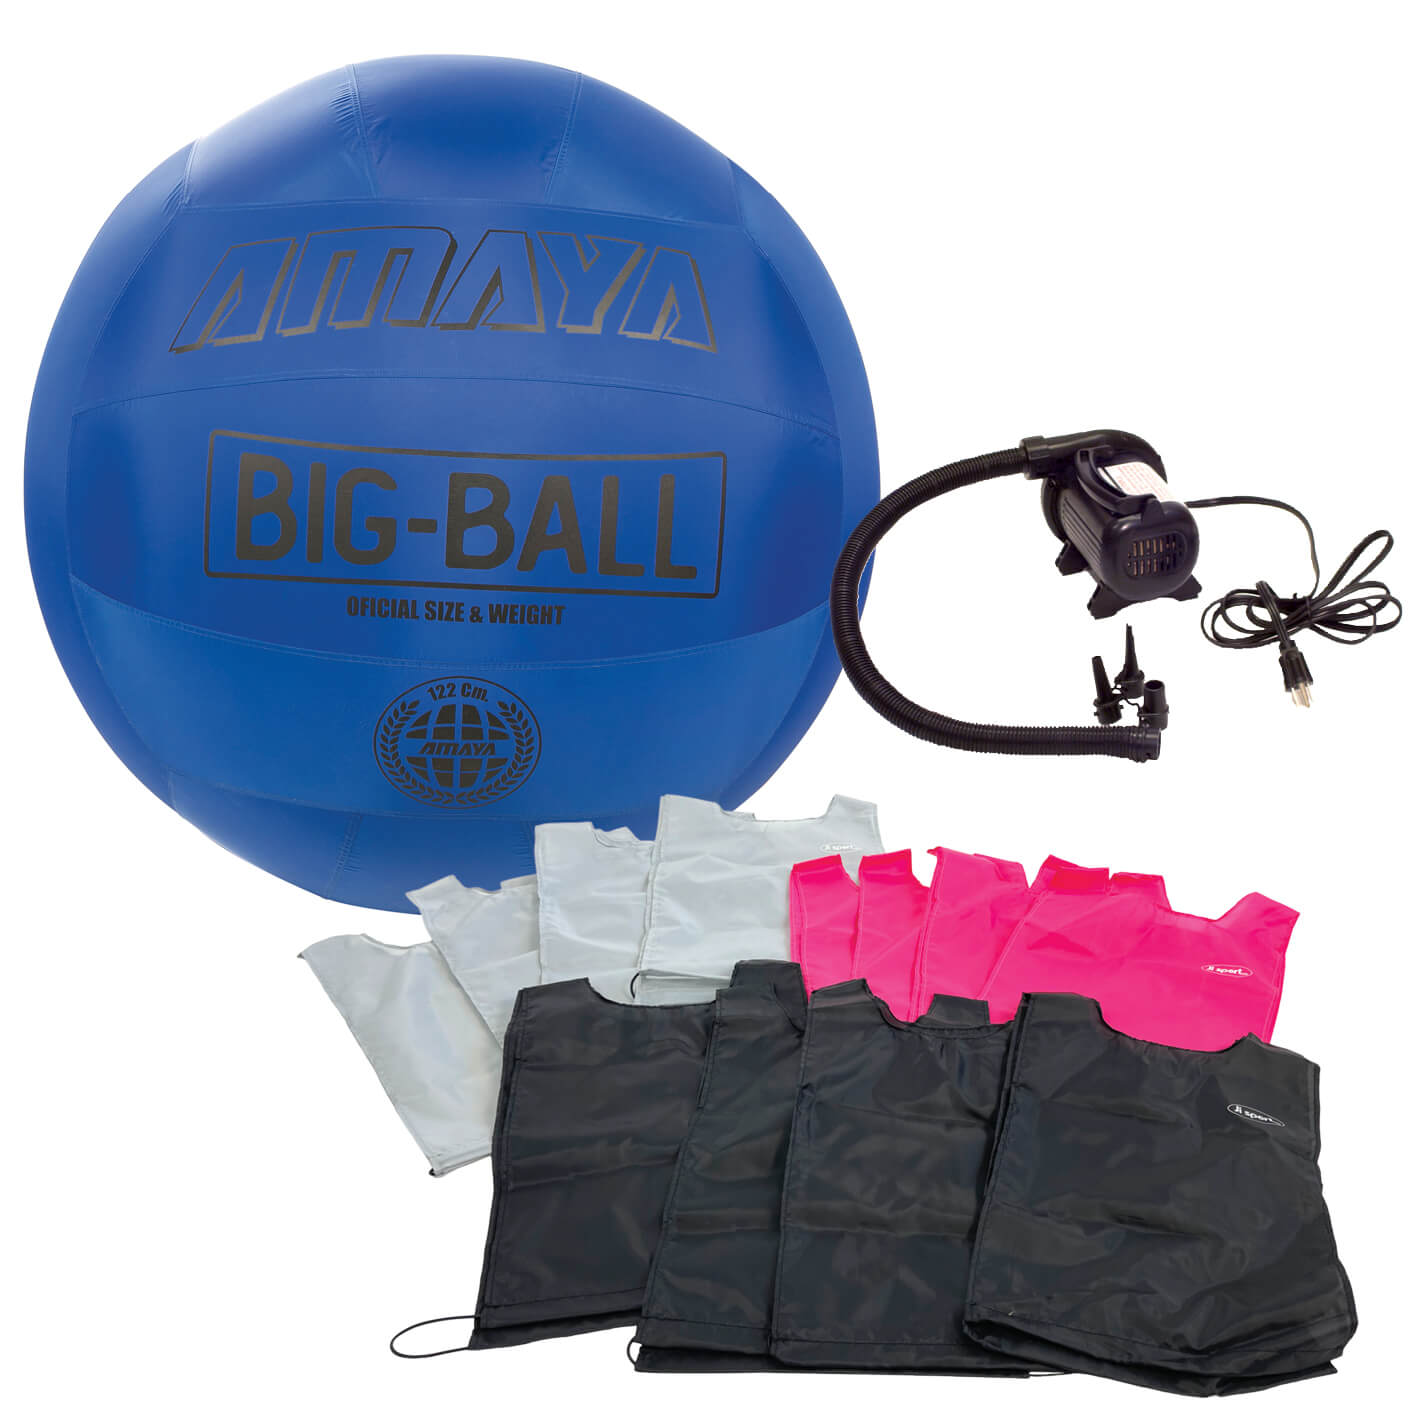 Big-ball paket